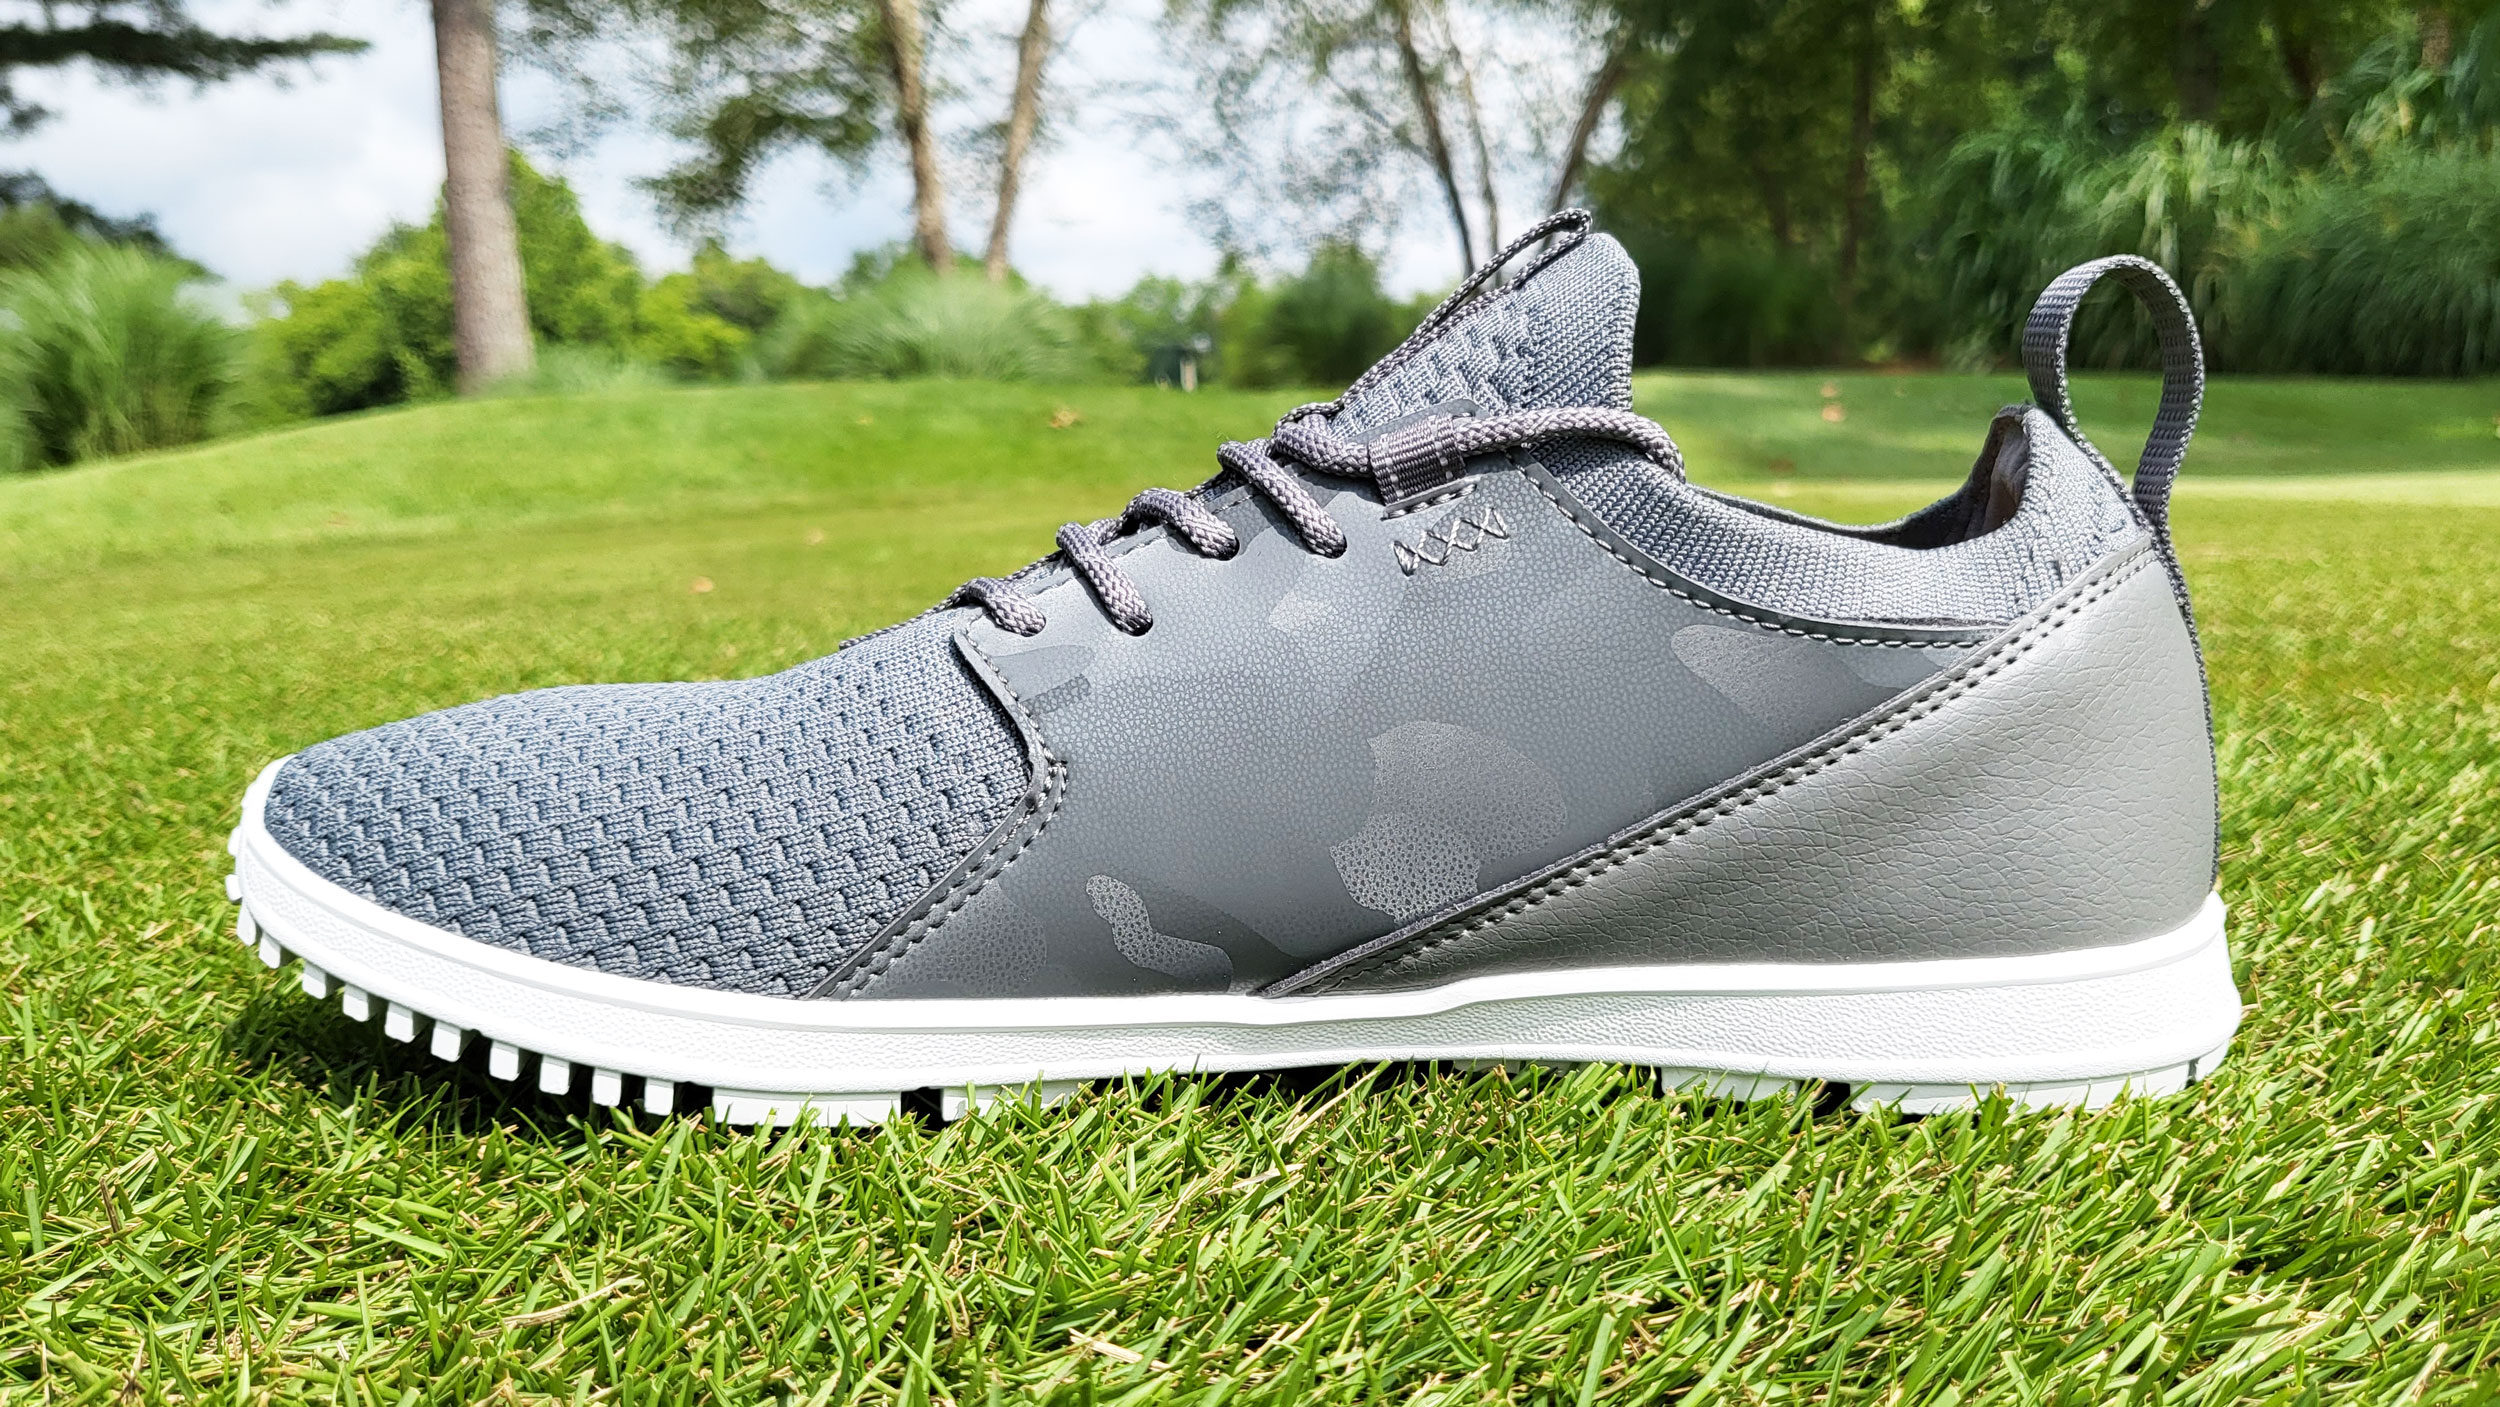 True Linkswear OG Feel Golf Shoe Review